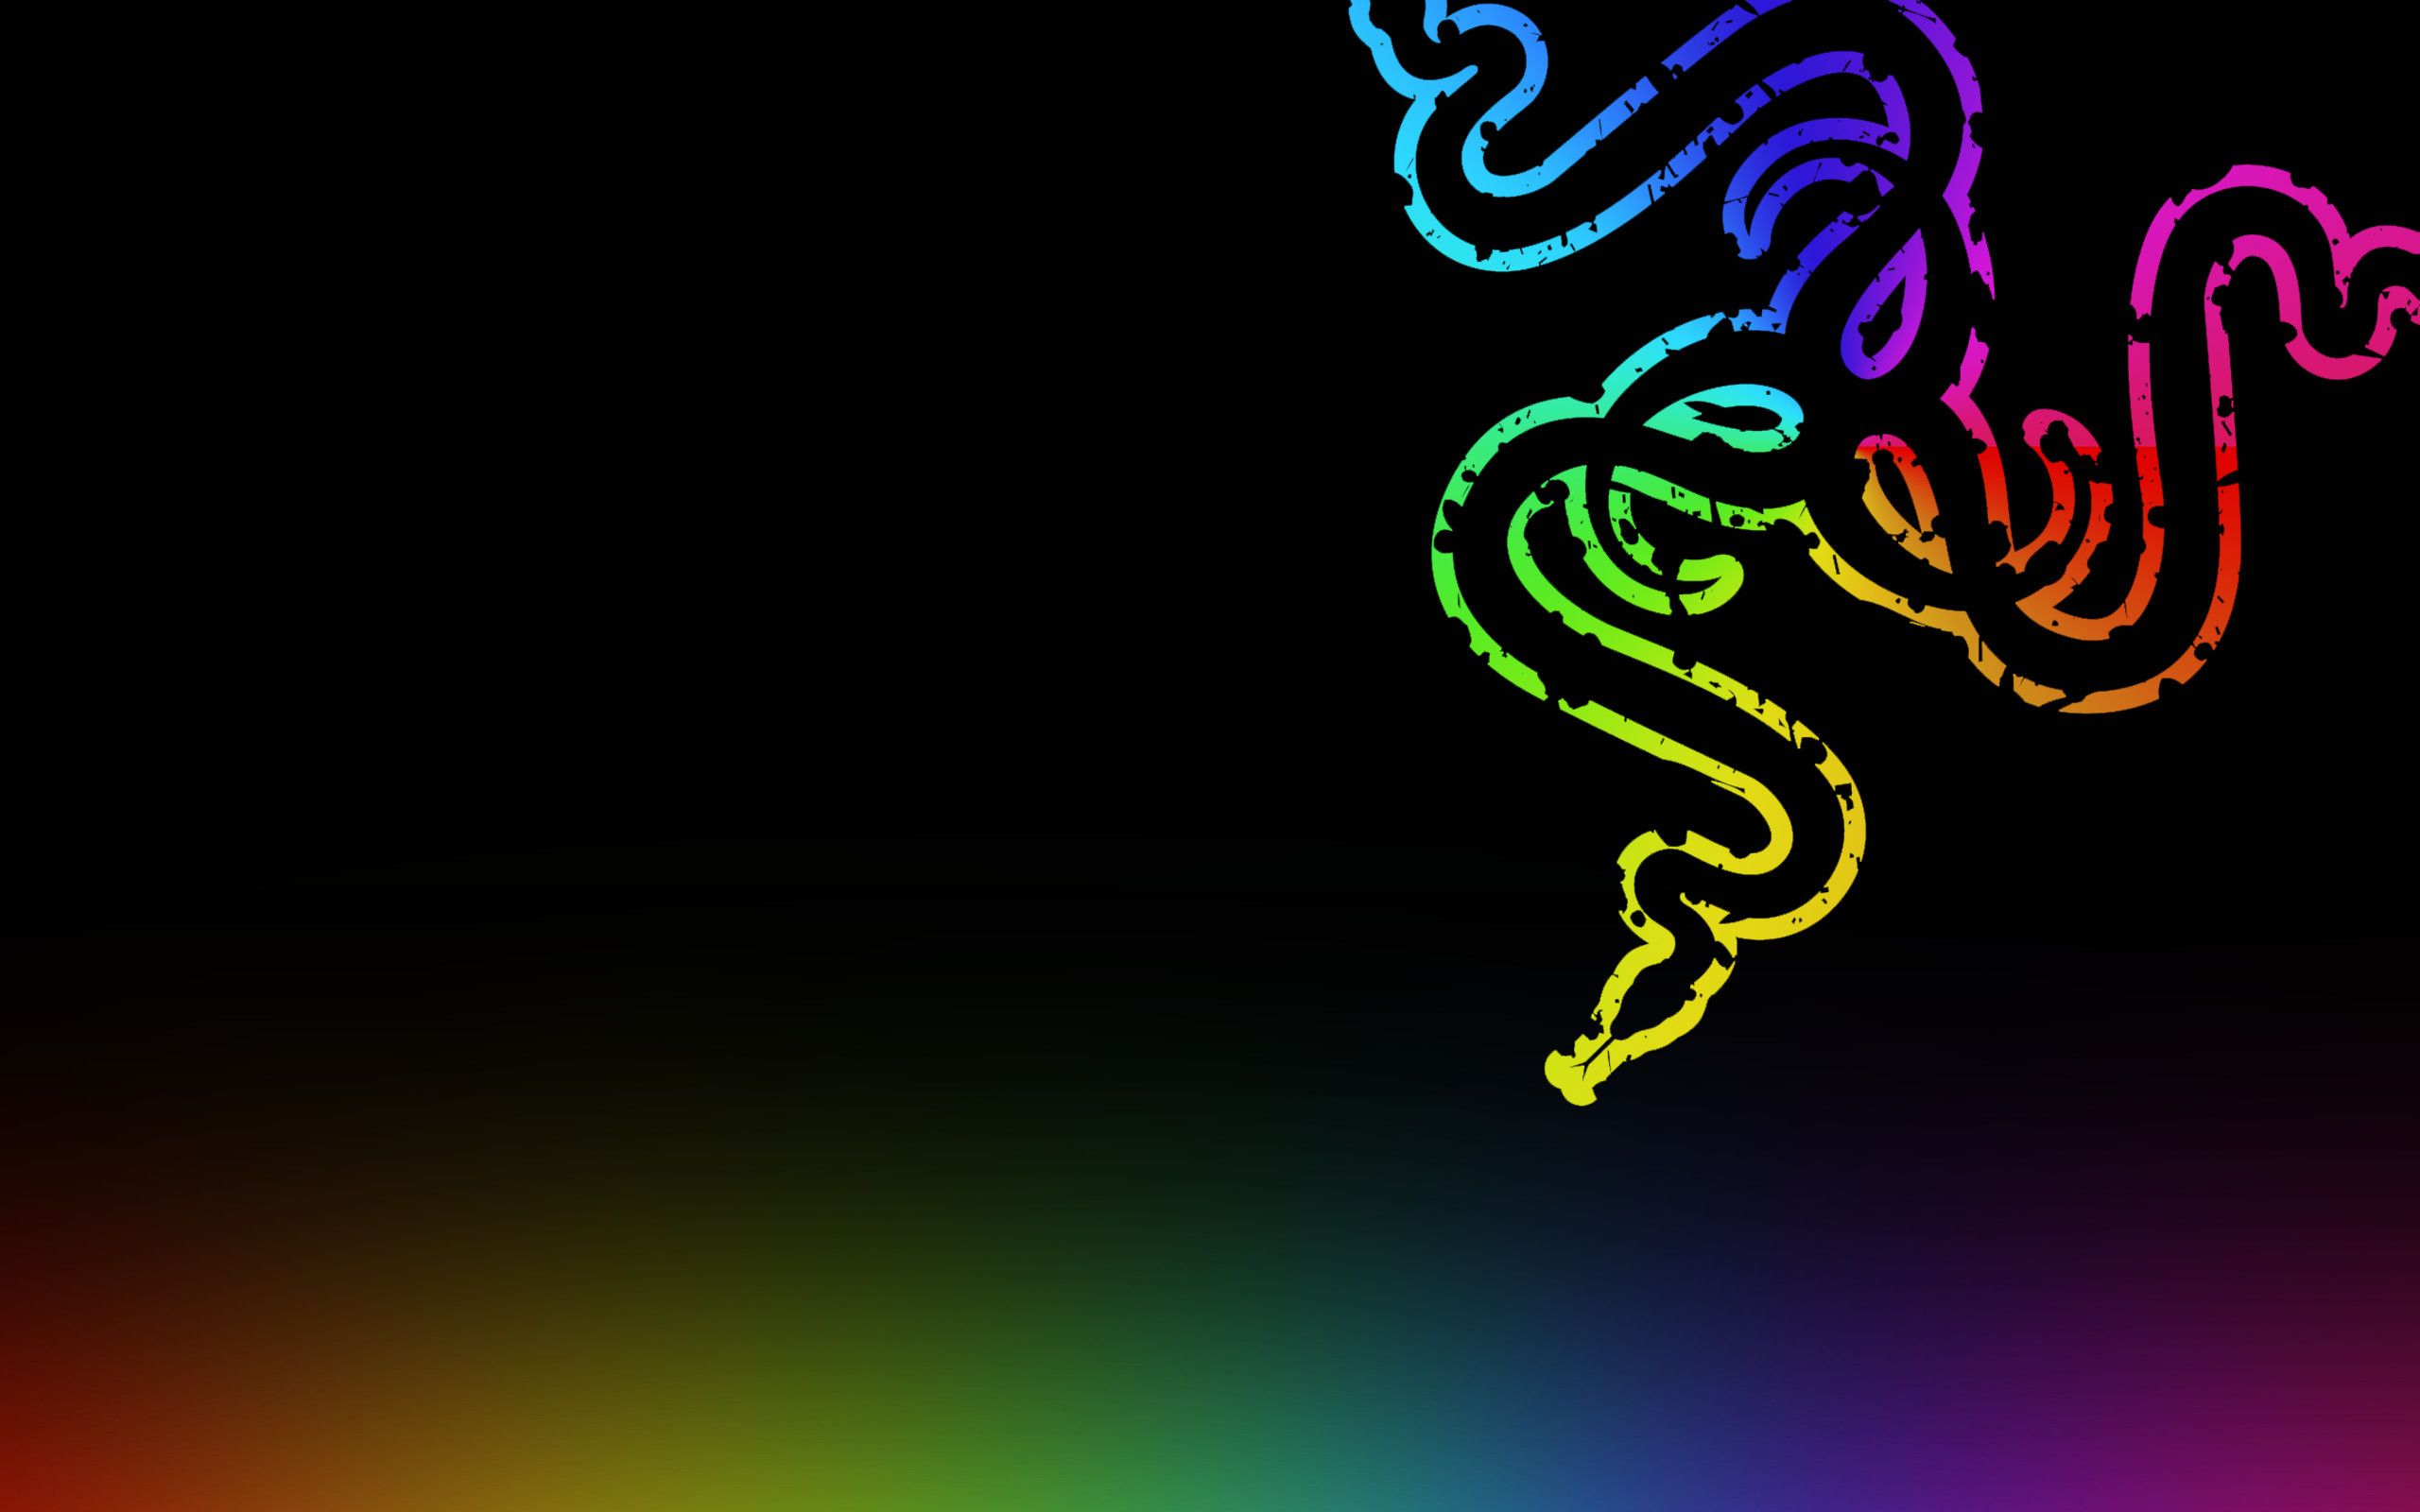  Razer Hintergrundbild 2560x1600. Vibrant Razer Chroma Wallpaper